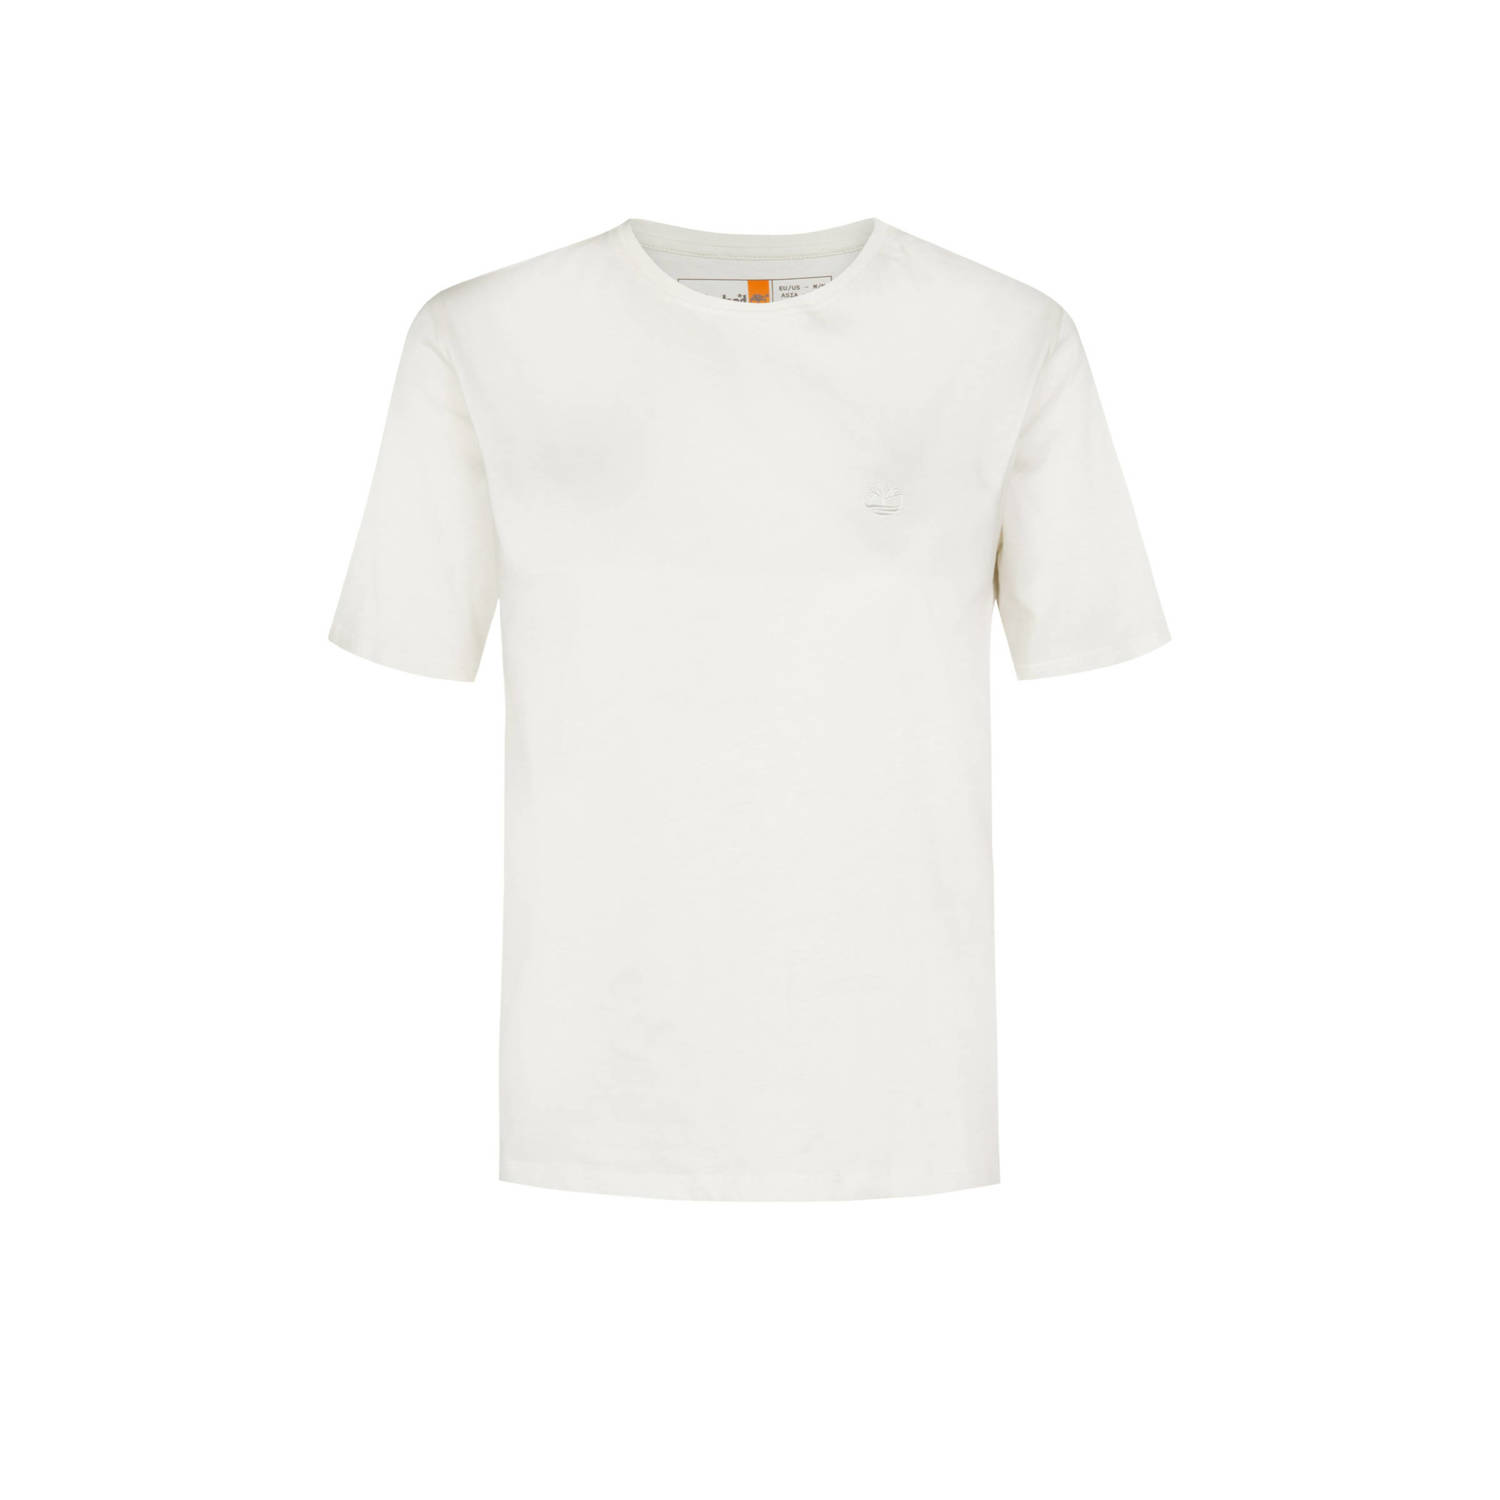 Timberland T-shirt met logo wit